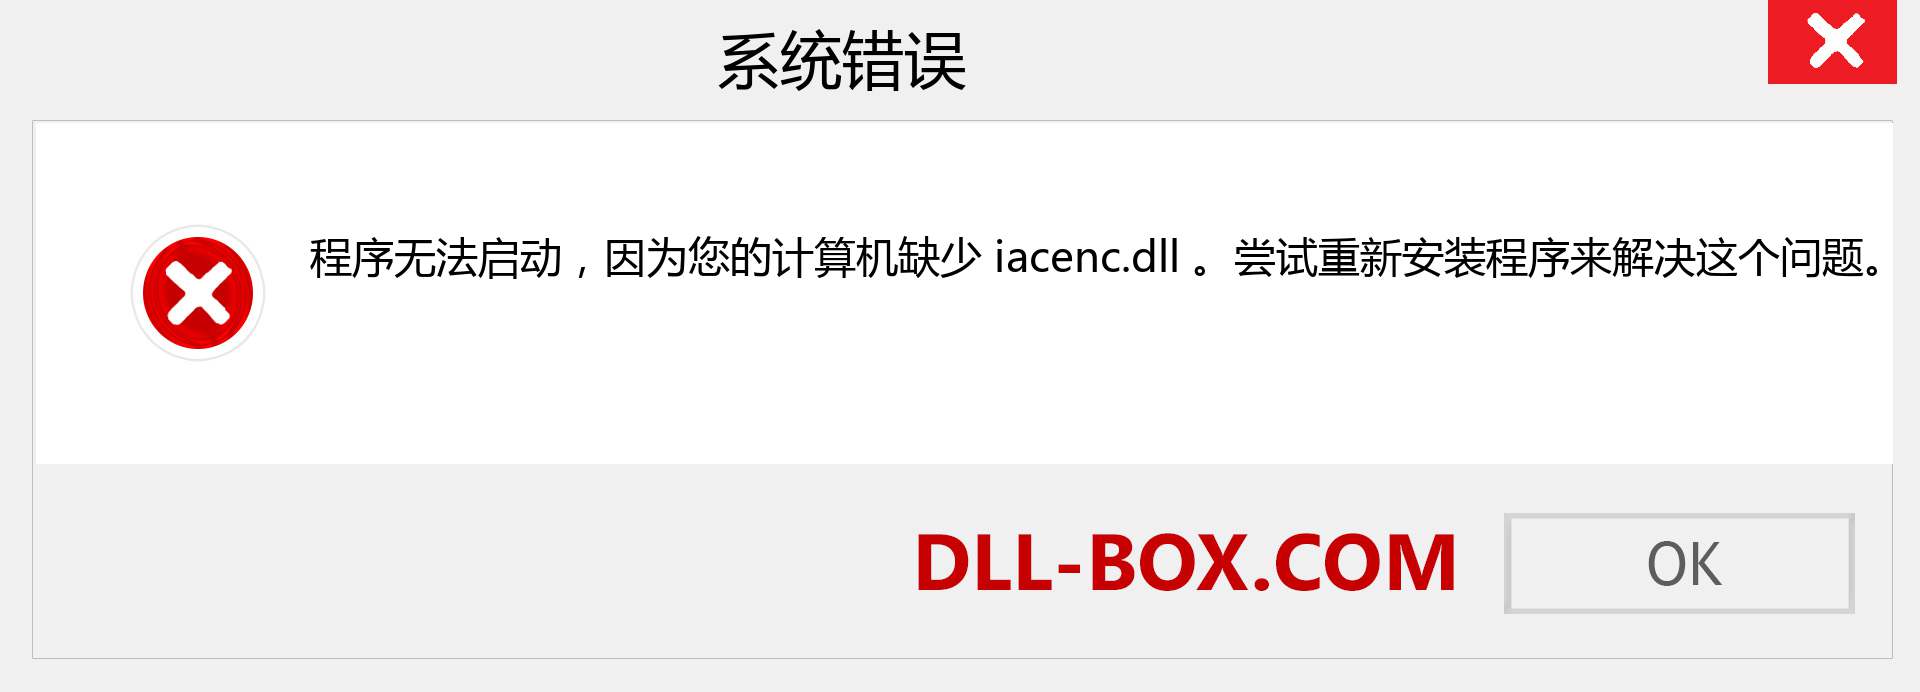 iacenc.dll 文件丢失？。 适用于 Windows 7、8、10 的下载 - 修复 Windows、照片、图像上的 iacenc dll 丢失错误